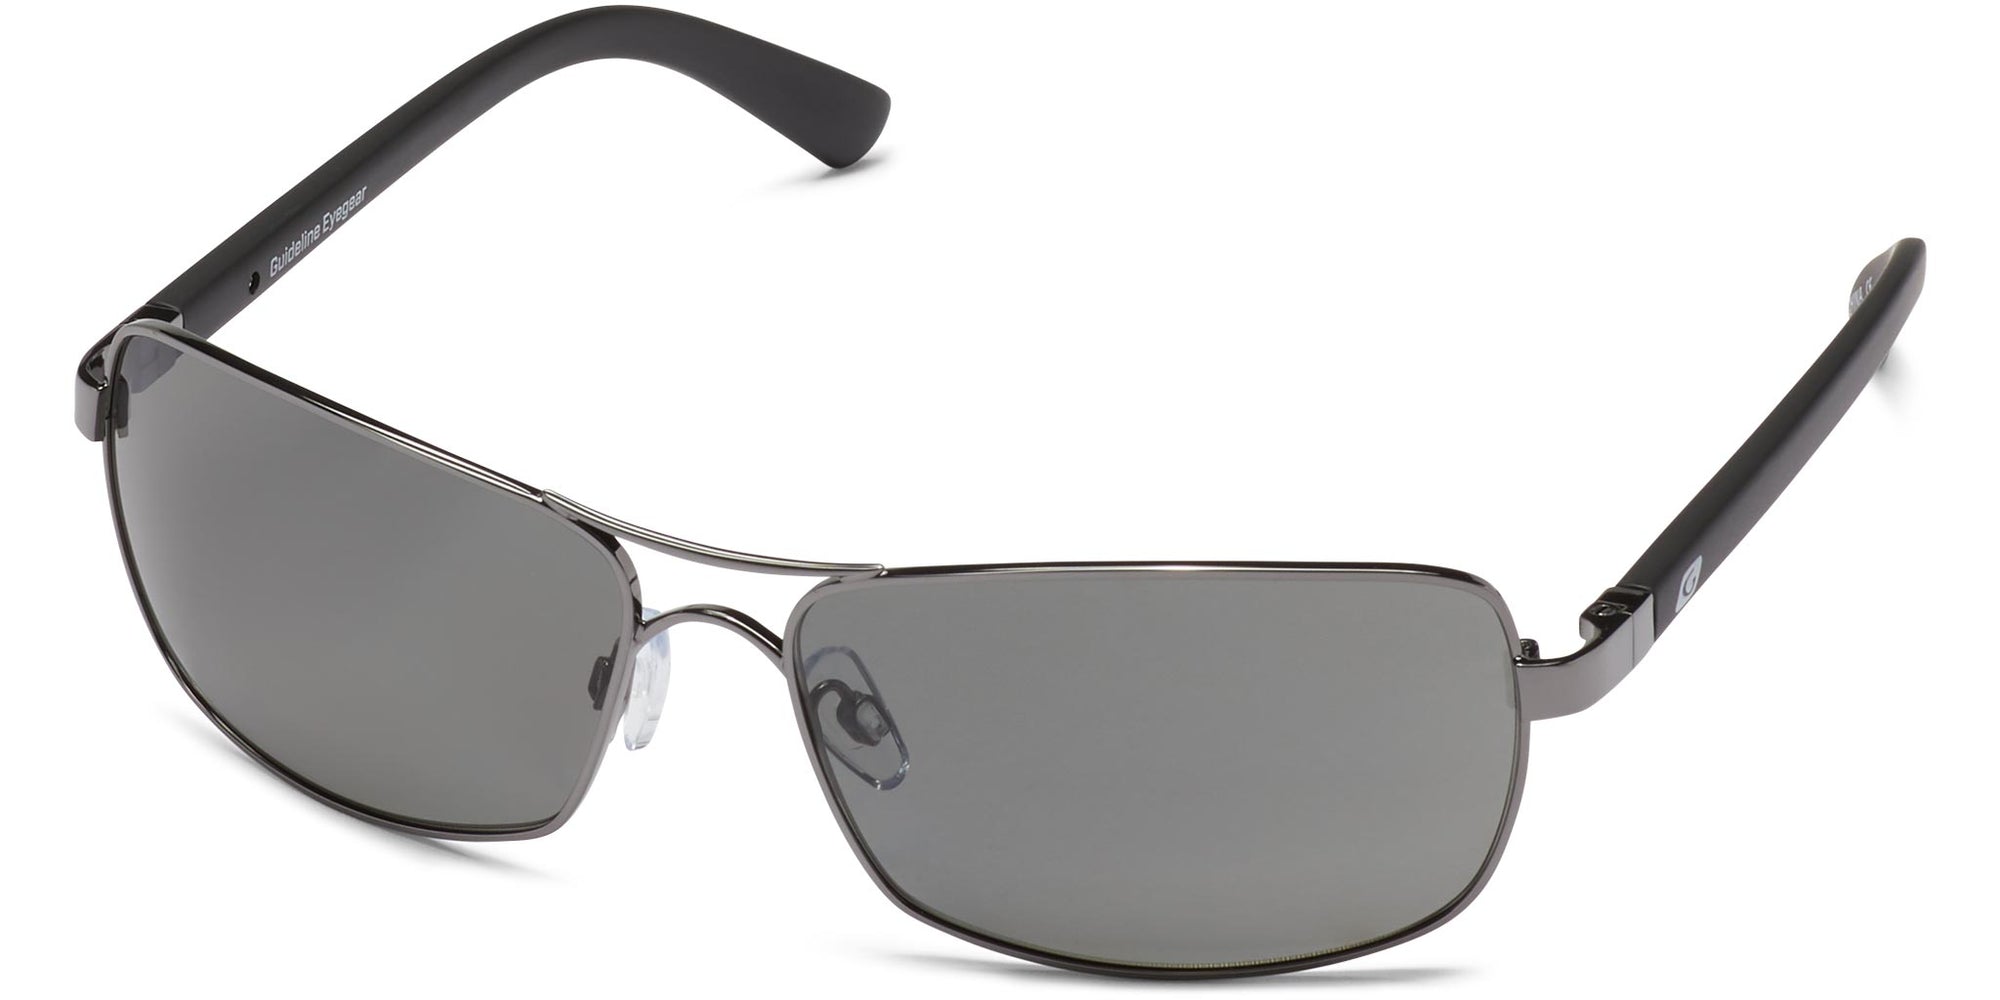 Captain - Shiny Gunmetal/Gray Lens - Polarized Sunglasses